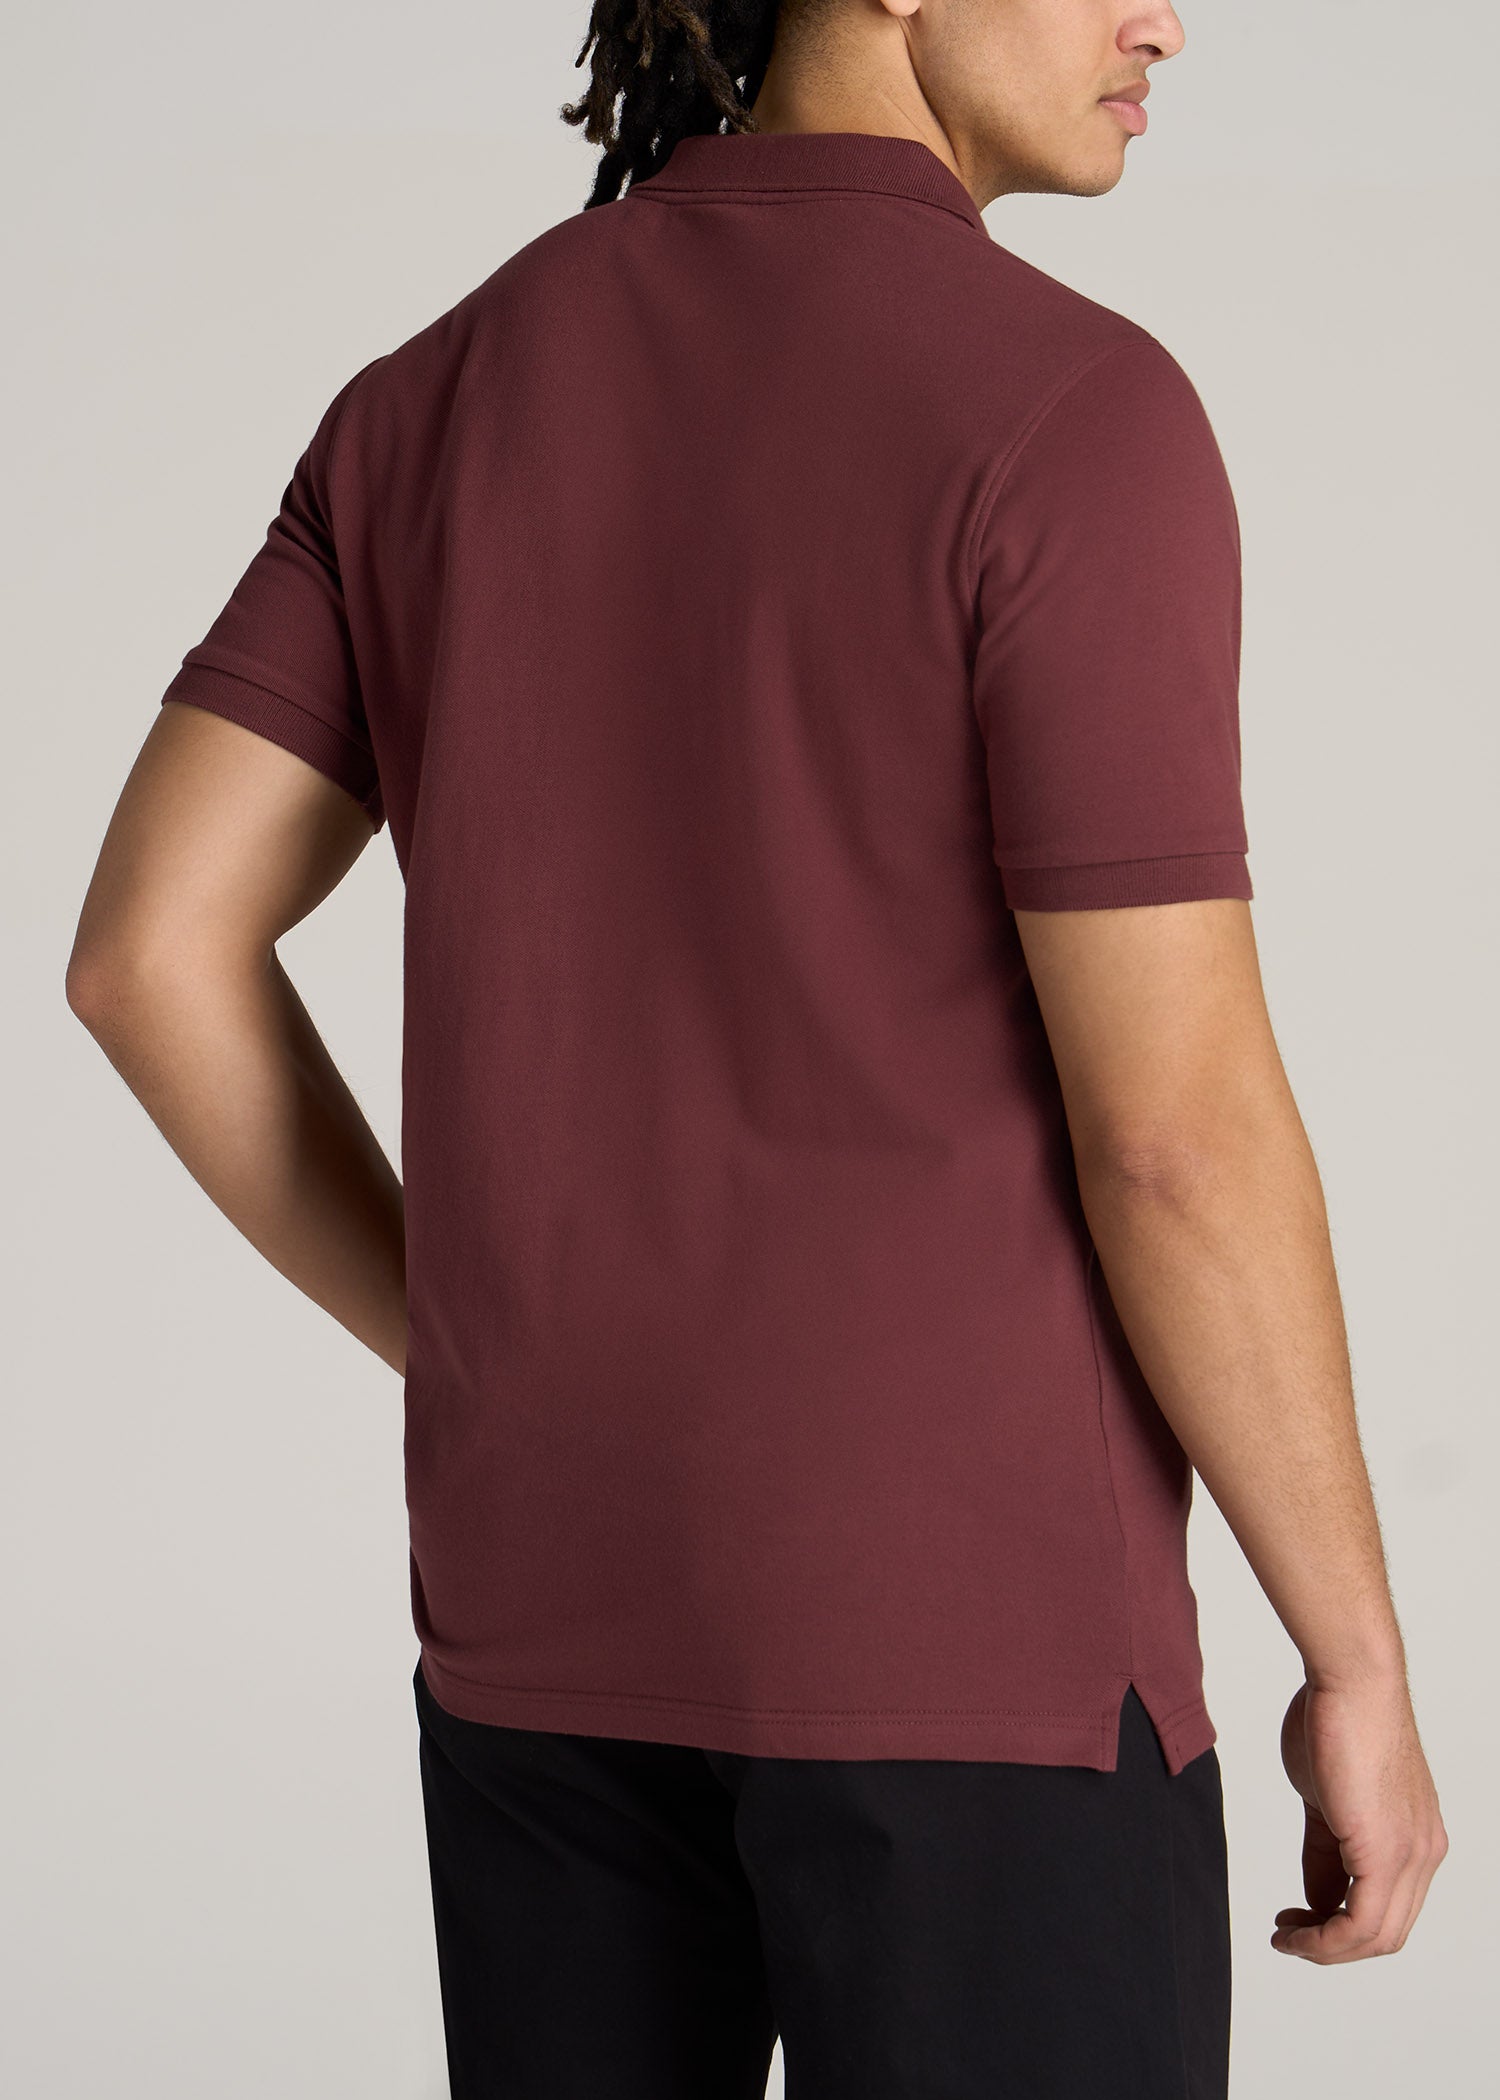 Polo Guinda Hombre for Tall Men: Cherry Brown Polo Shirt